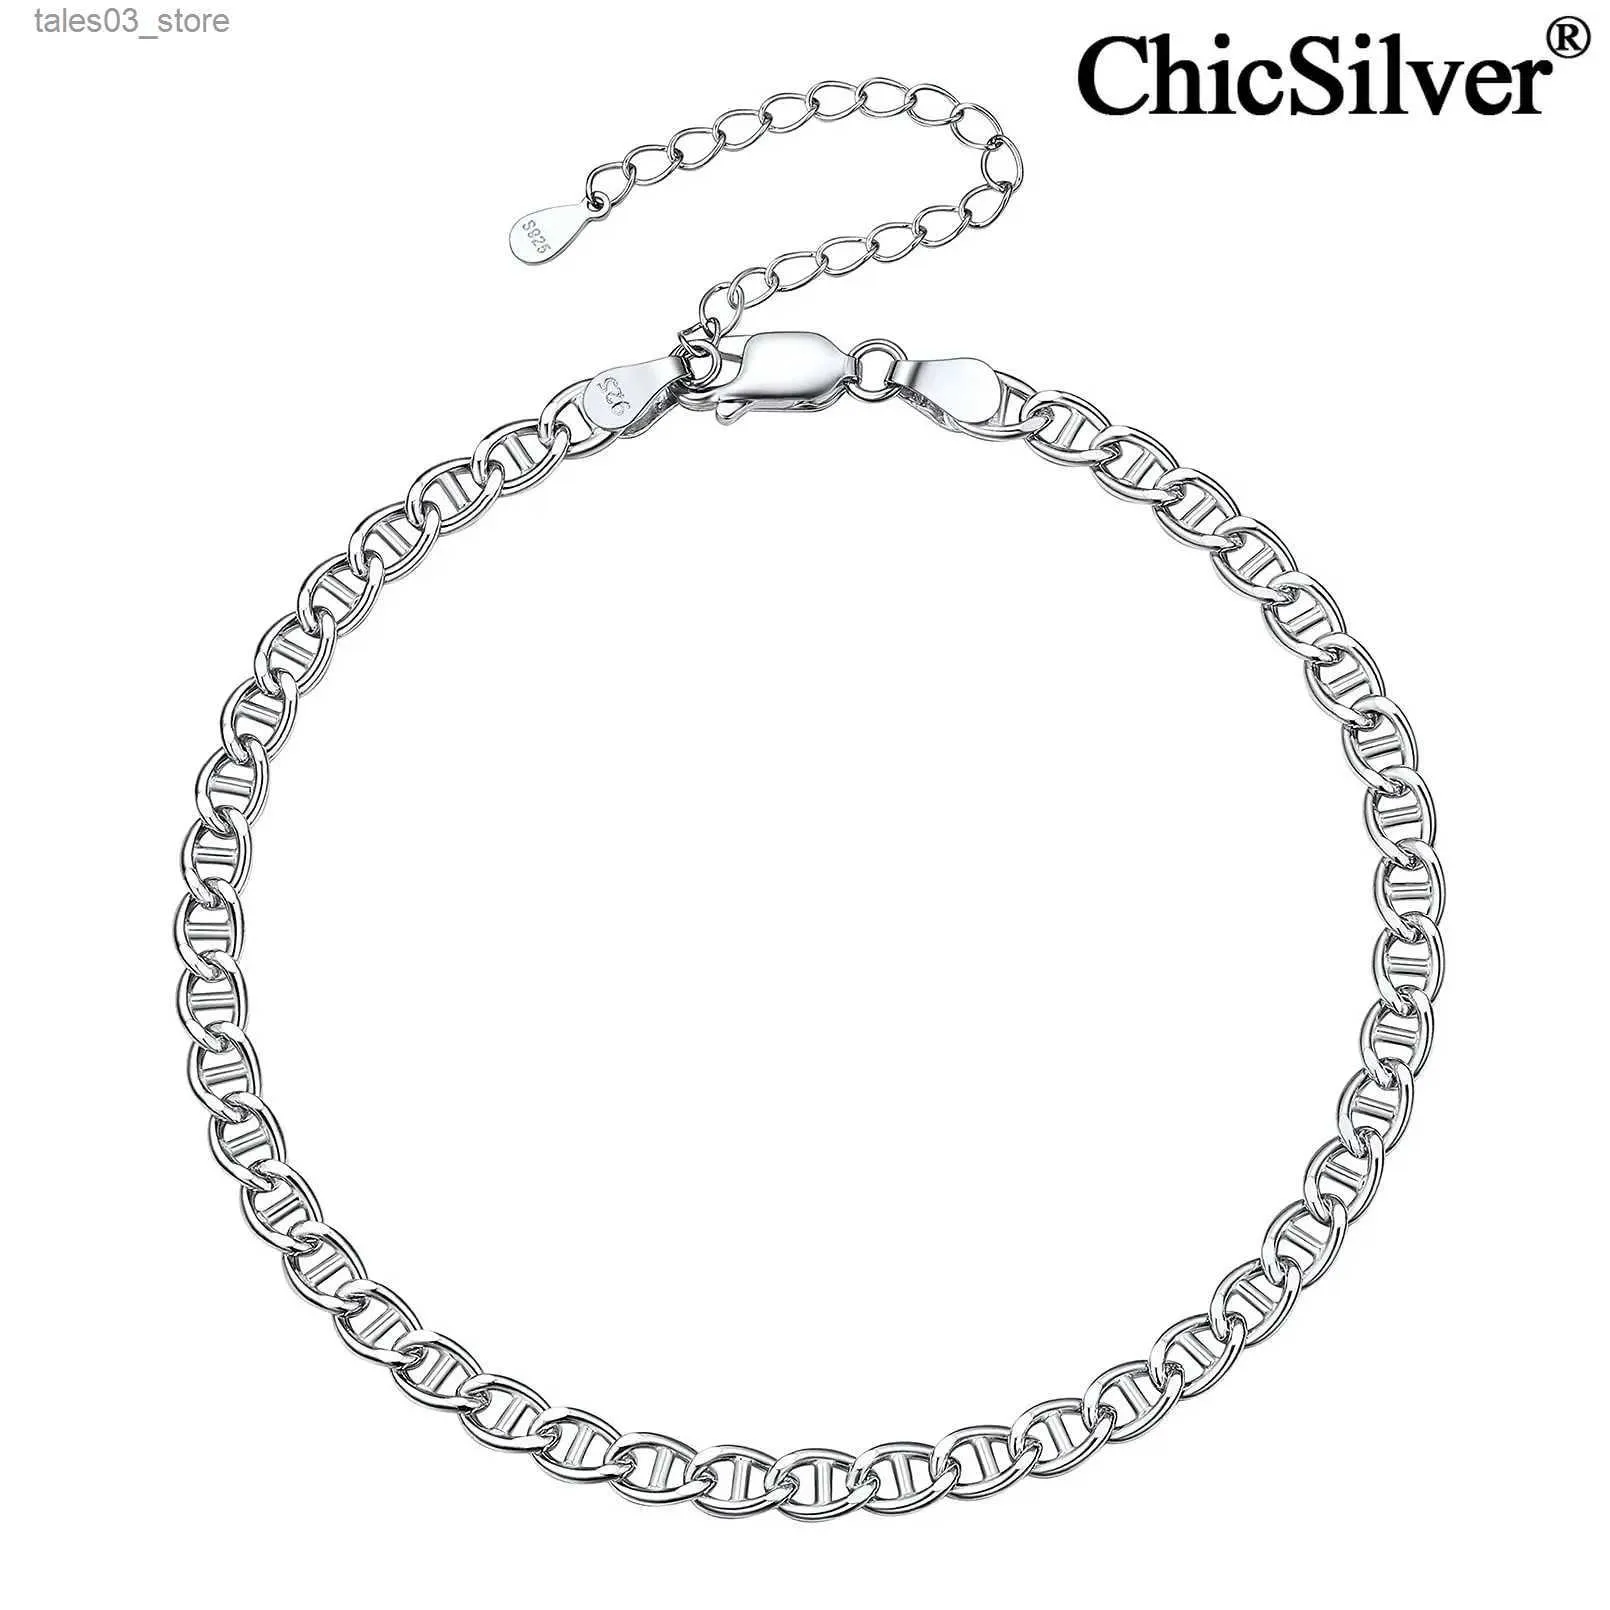 Bracelets de cheville ChicSilver 4mm plat Mariner chaîne Bracelet de cheville en argent Sterling pour les femmes large plage pieds nus bijoux Q231113